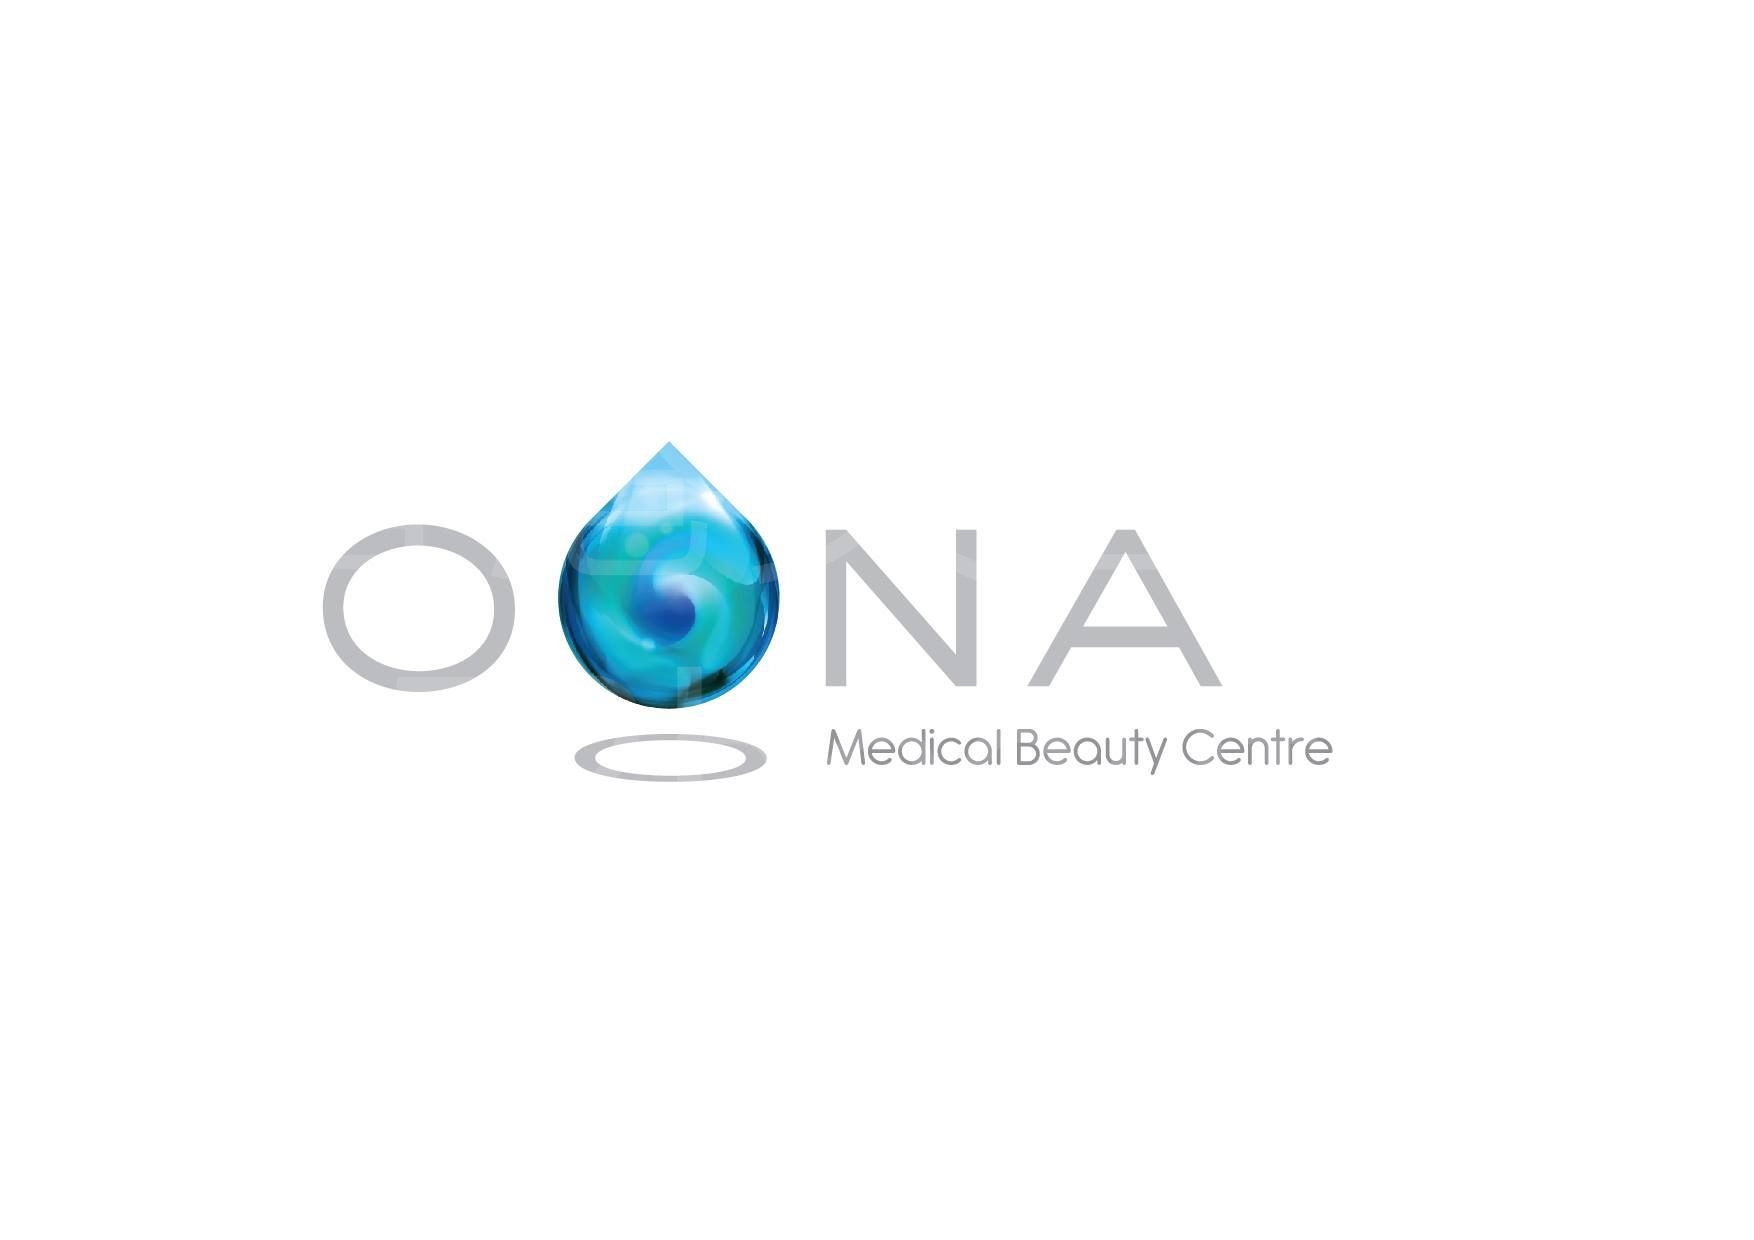 美容院 Beauty Salon: OONA Medical Beauty Centre